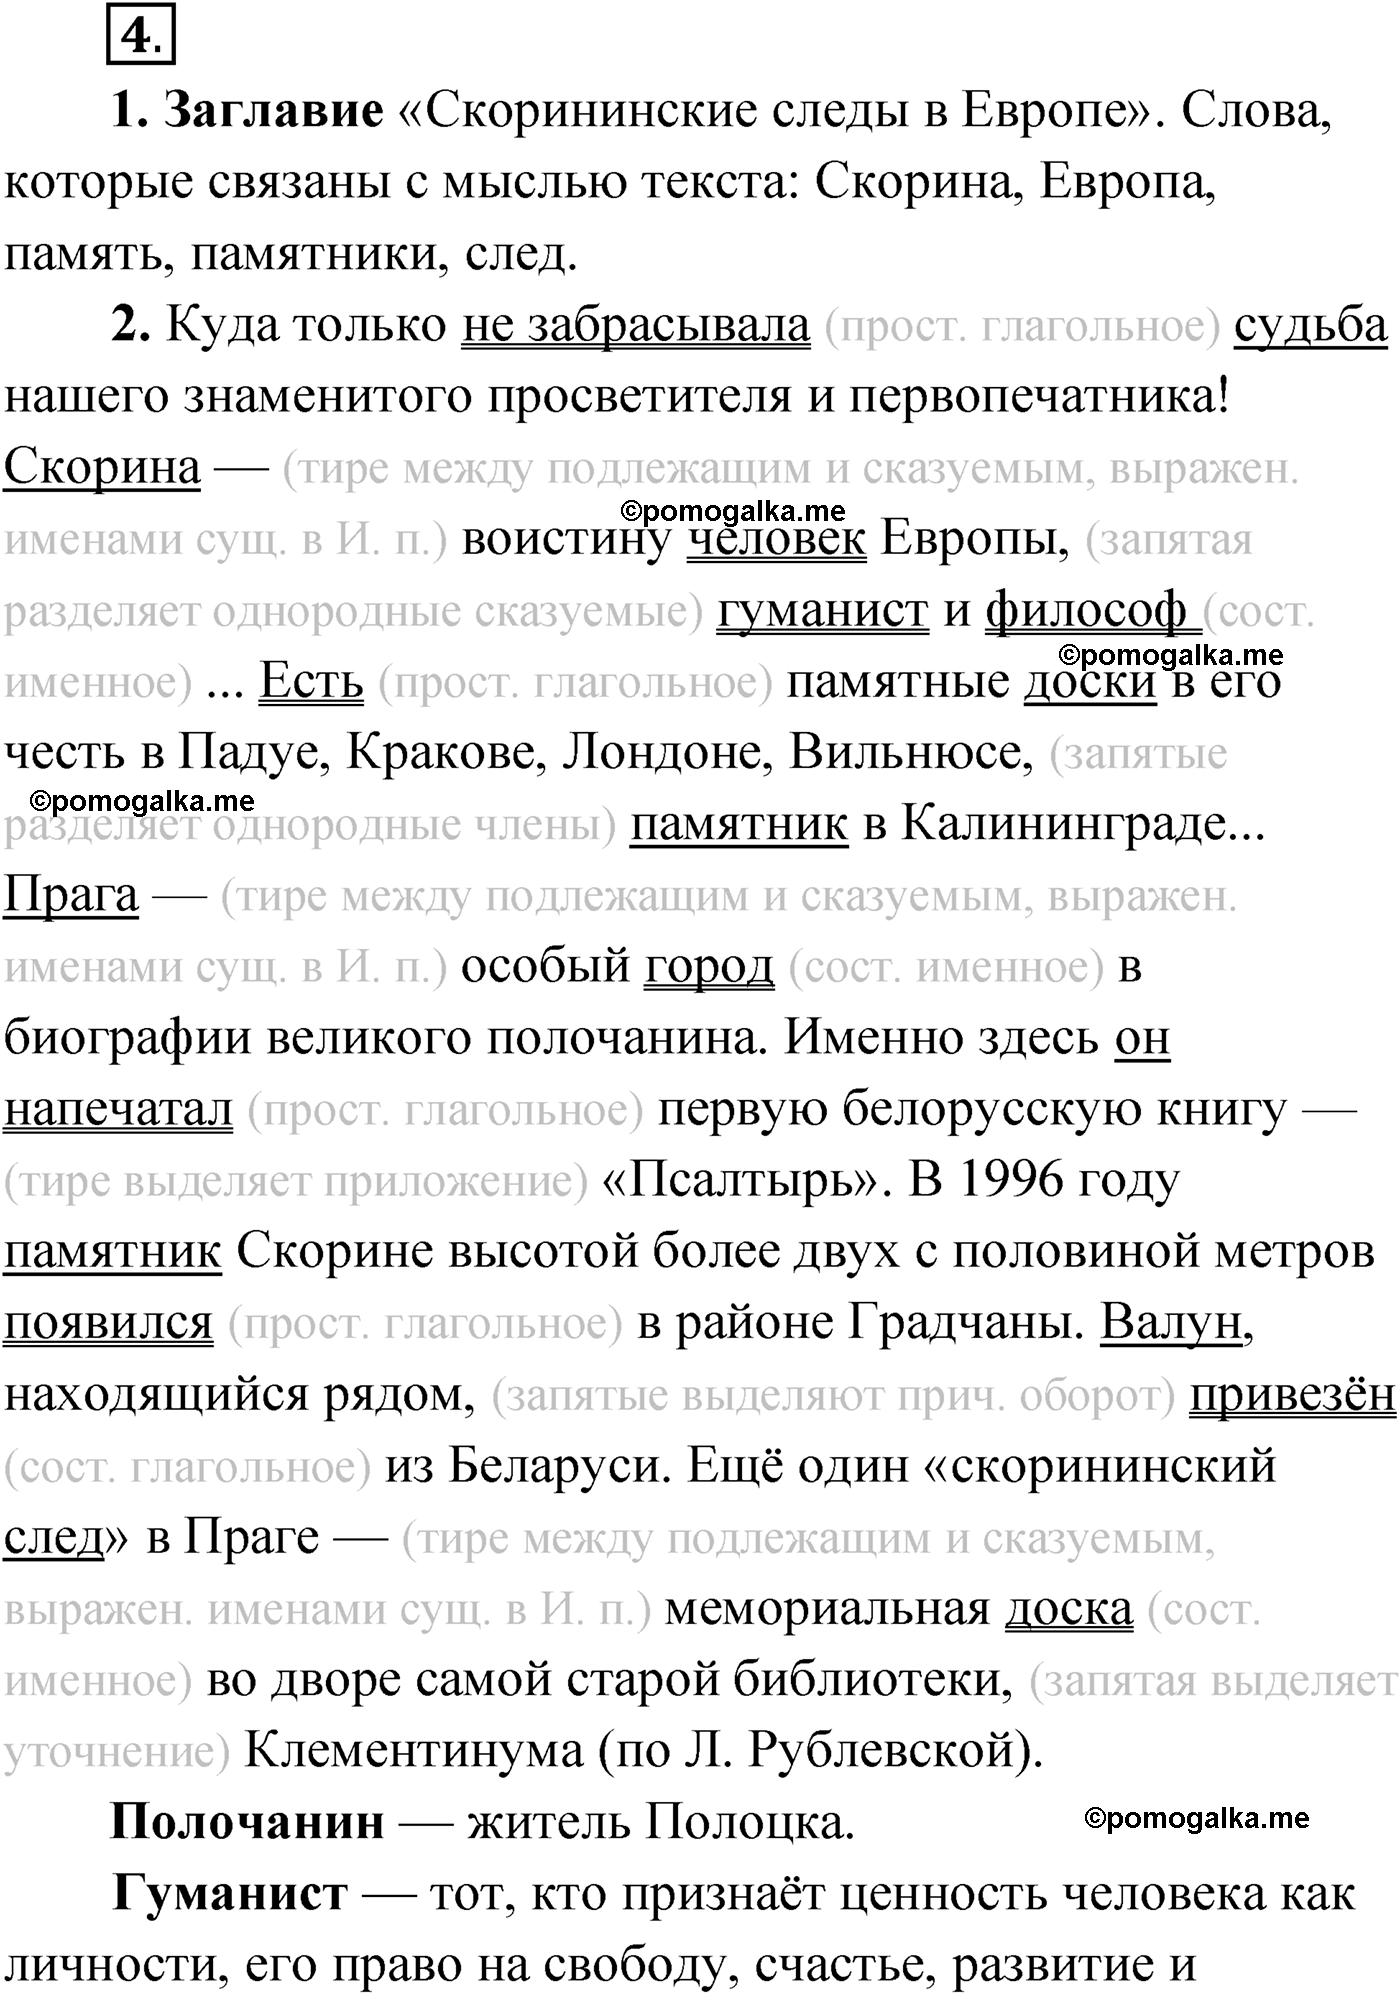 упражнение №4 русский язык 9 класс Мурина 2019 год